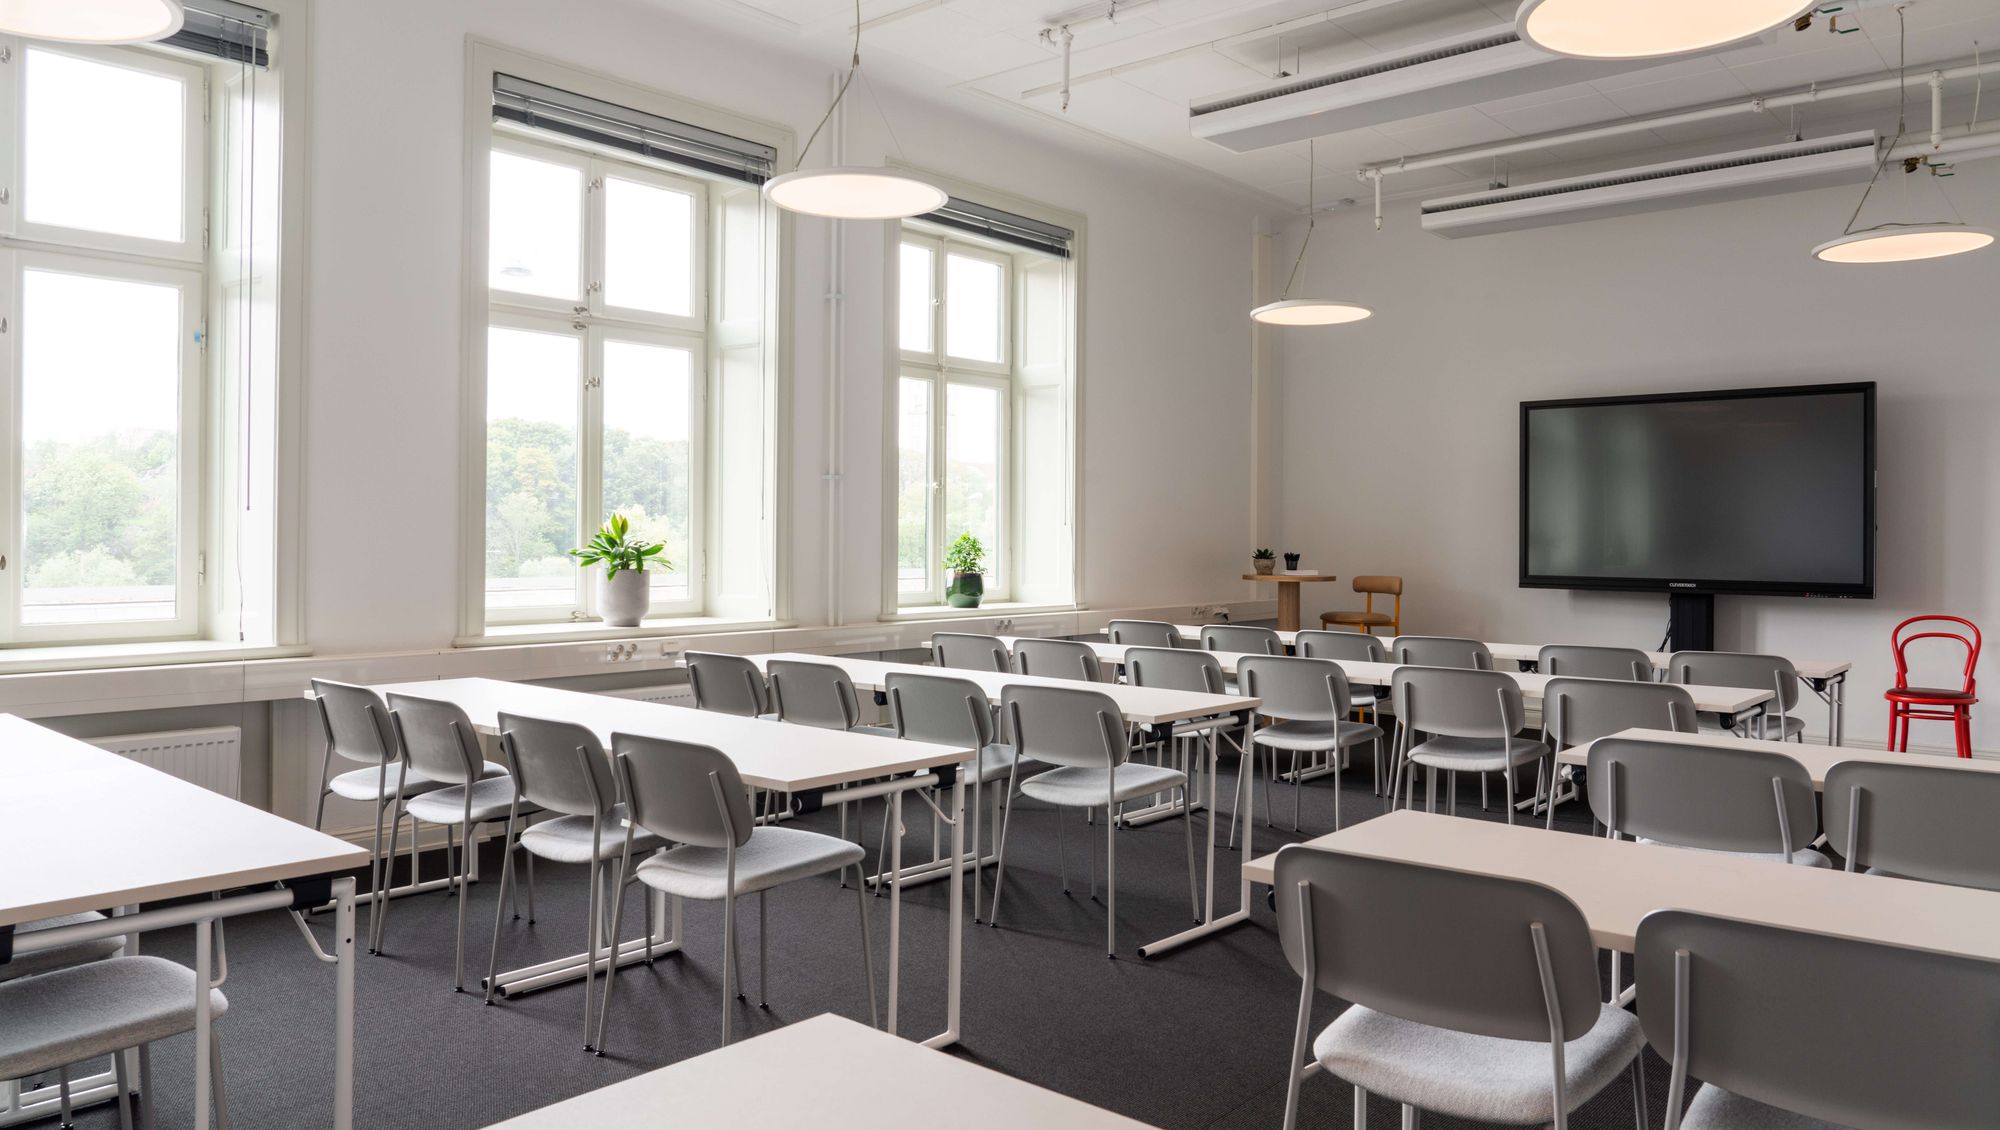 Wall-Enberg är ett mötesrum i Stockholm som kan anpassas efter din sammankomst